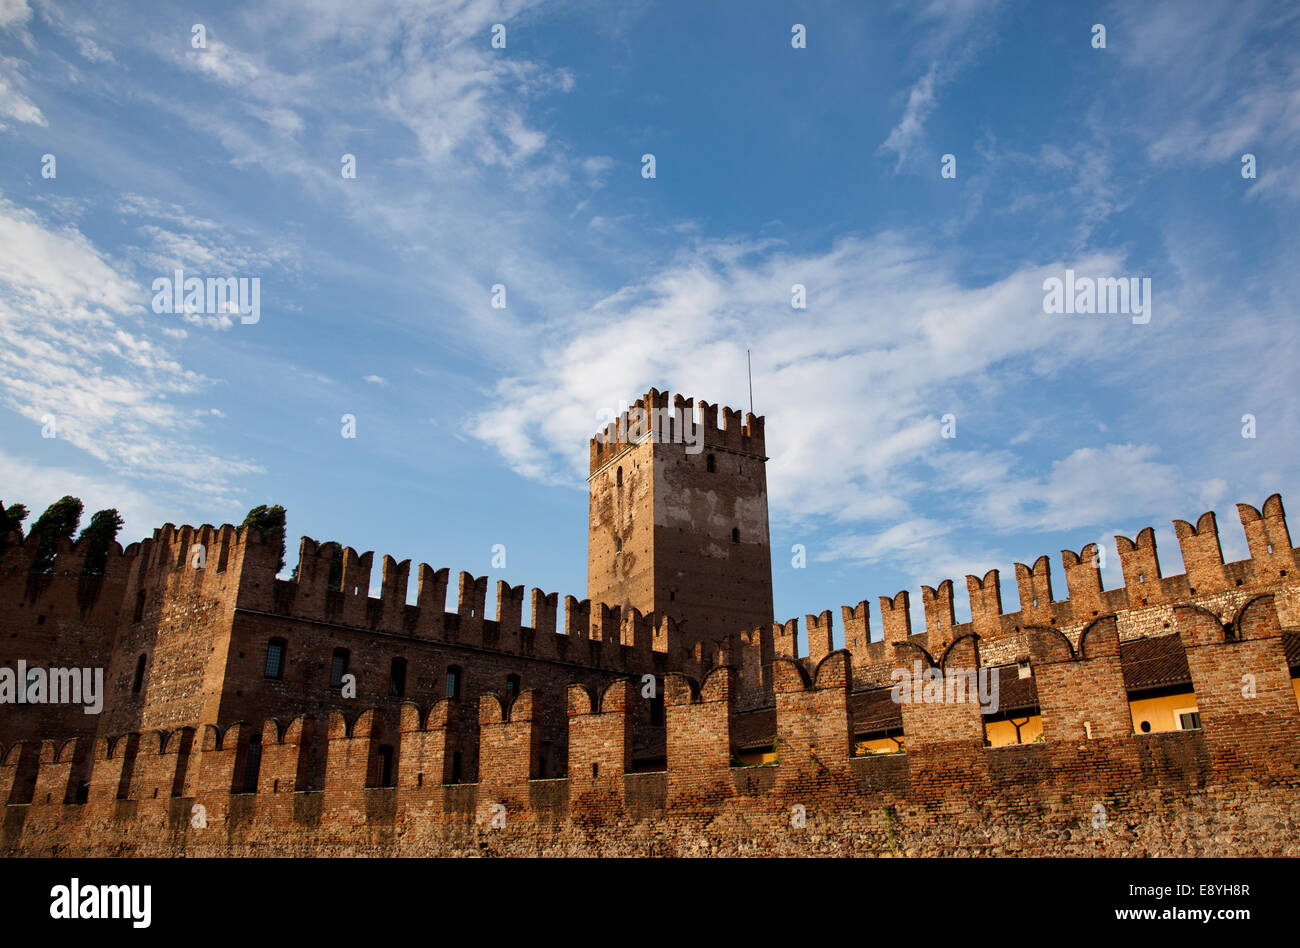 Castel Vecchio merlature Foto Stock